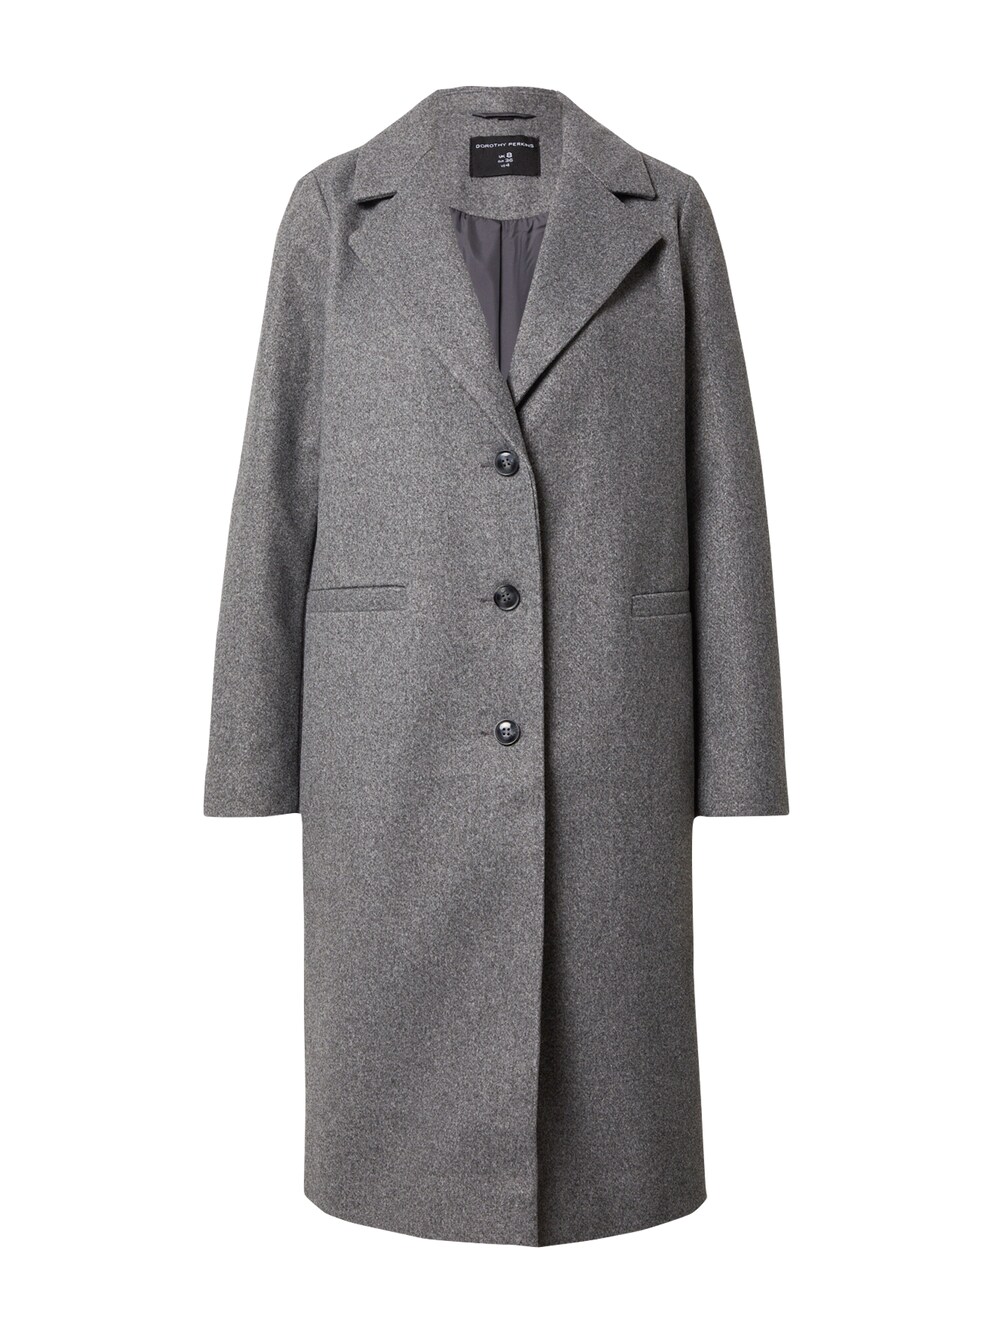 Межсезонное пальто Dorothy Perkins, пестрый серый межсезонное пальто s oliver пестрый бежевый